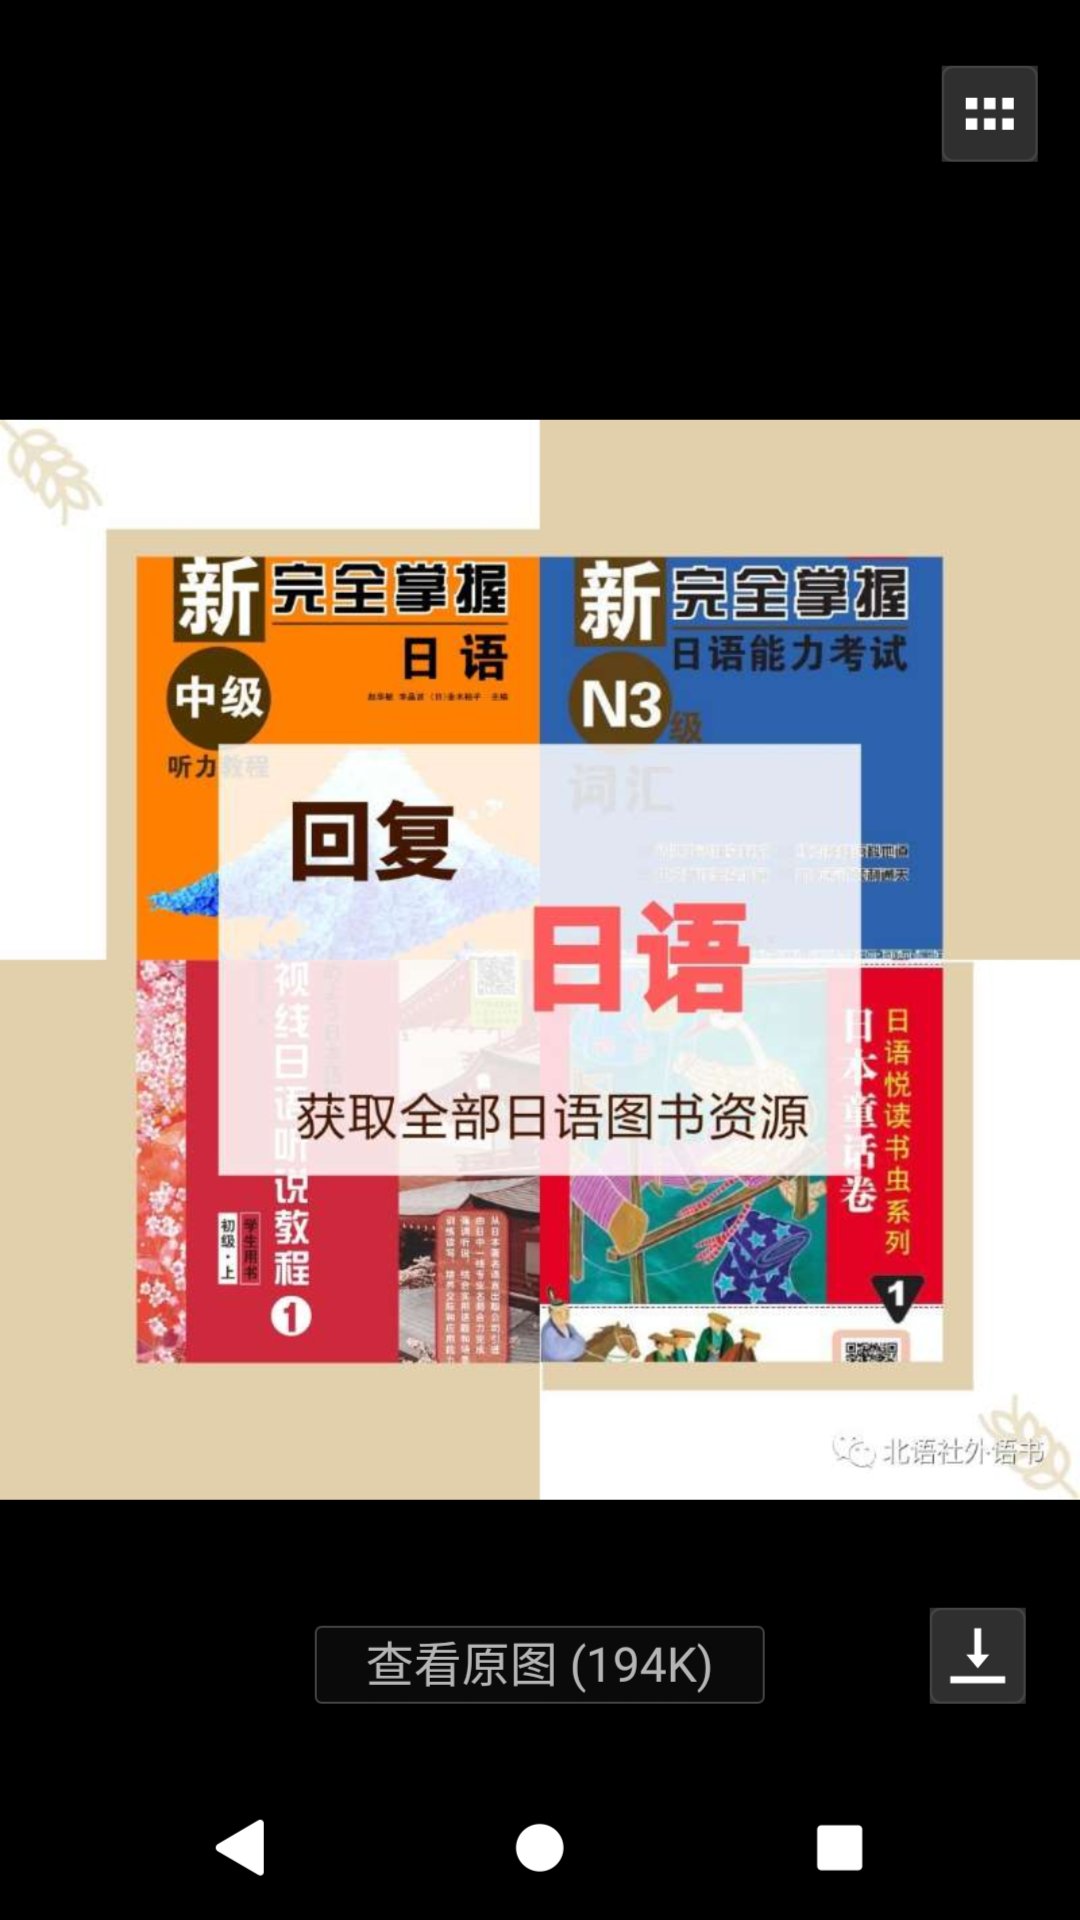 书很全面 而且官网上还有对应汉语翻译 很完美